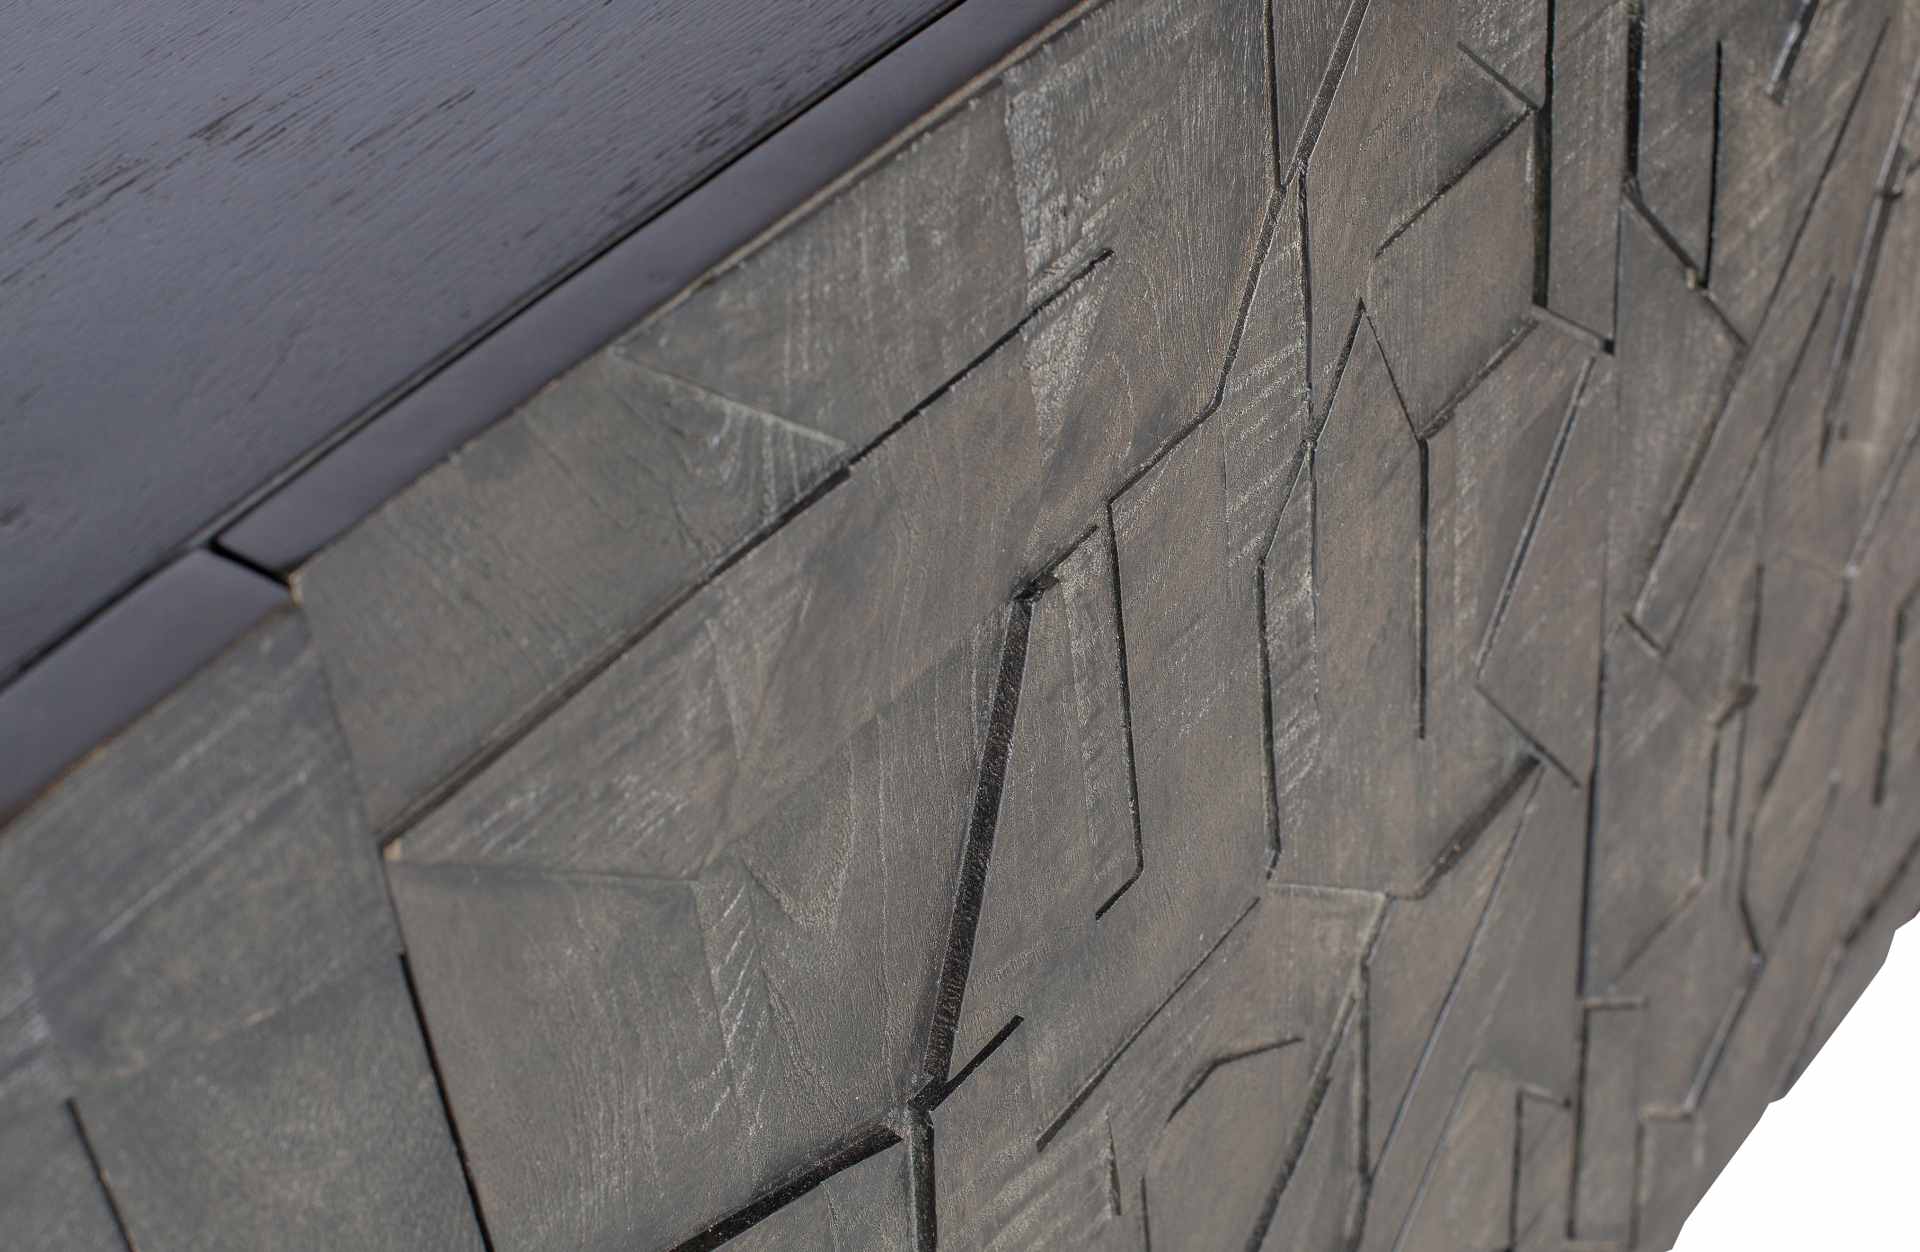 Das Sideboard Counter wurde aus Mangoholz gefertigt, welches einen schwarzen Farbton besitzt. Das Sideboard besitzt vier Türen mit Fächern im inneren für ausreichend Stauraum.